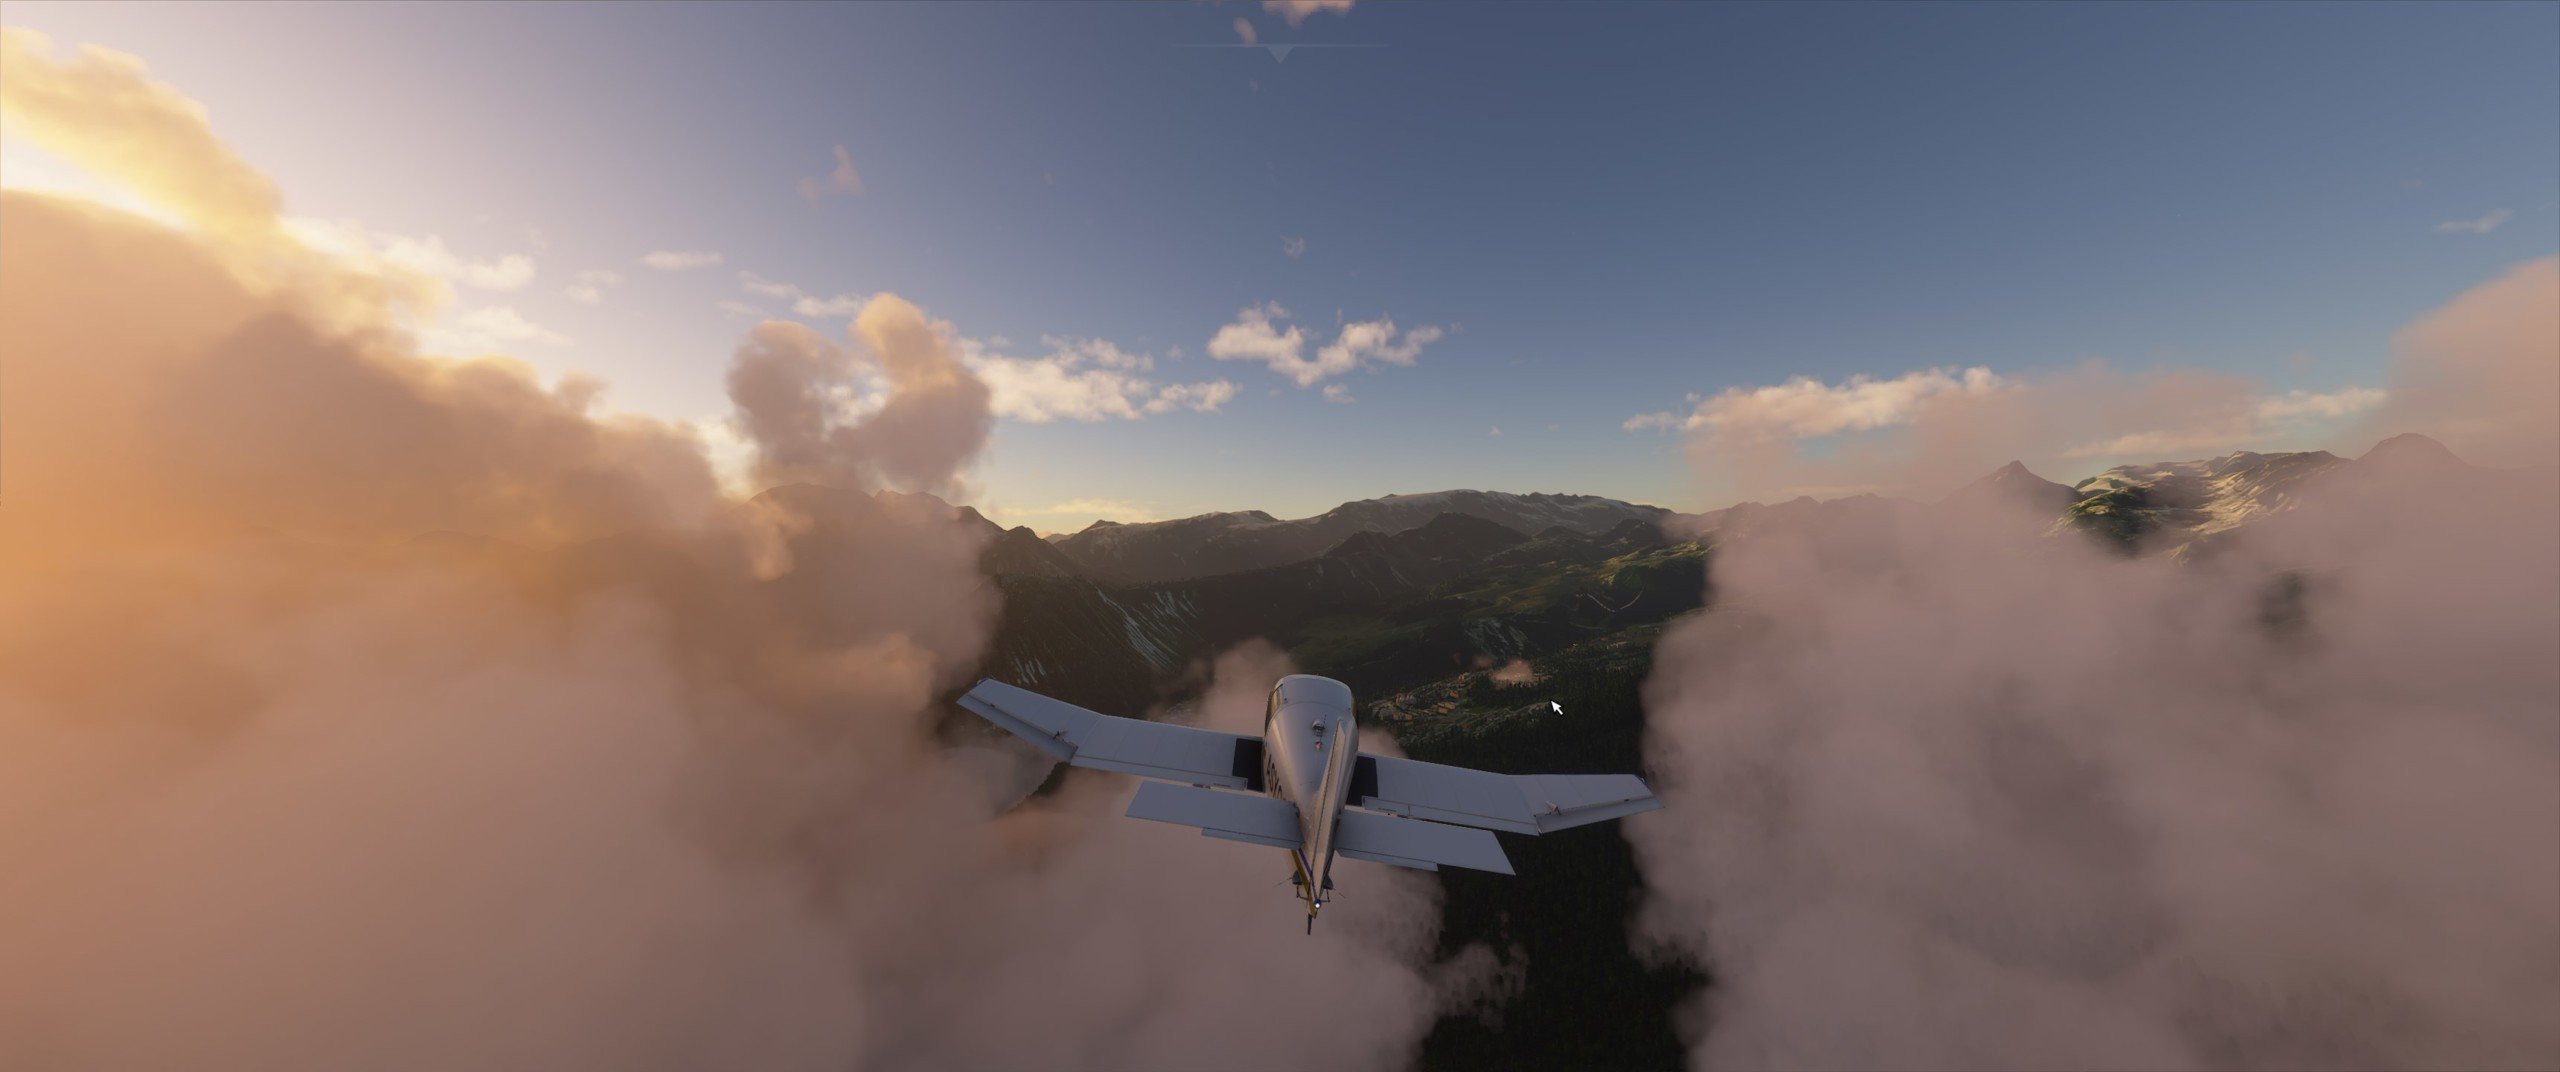 flight-simulator-nuages-scaled.jpg